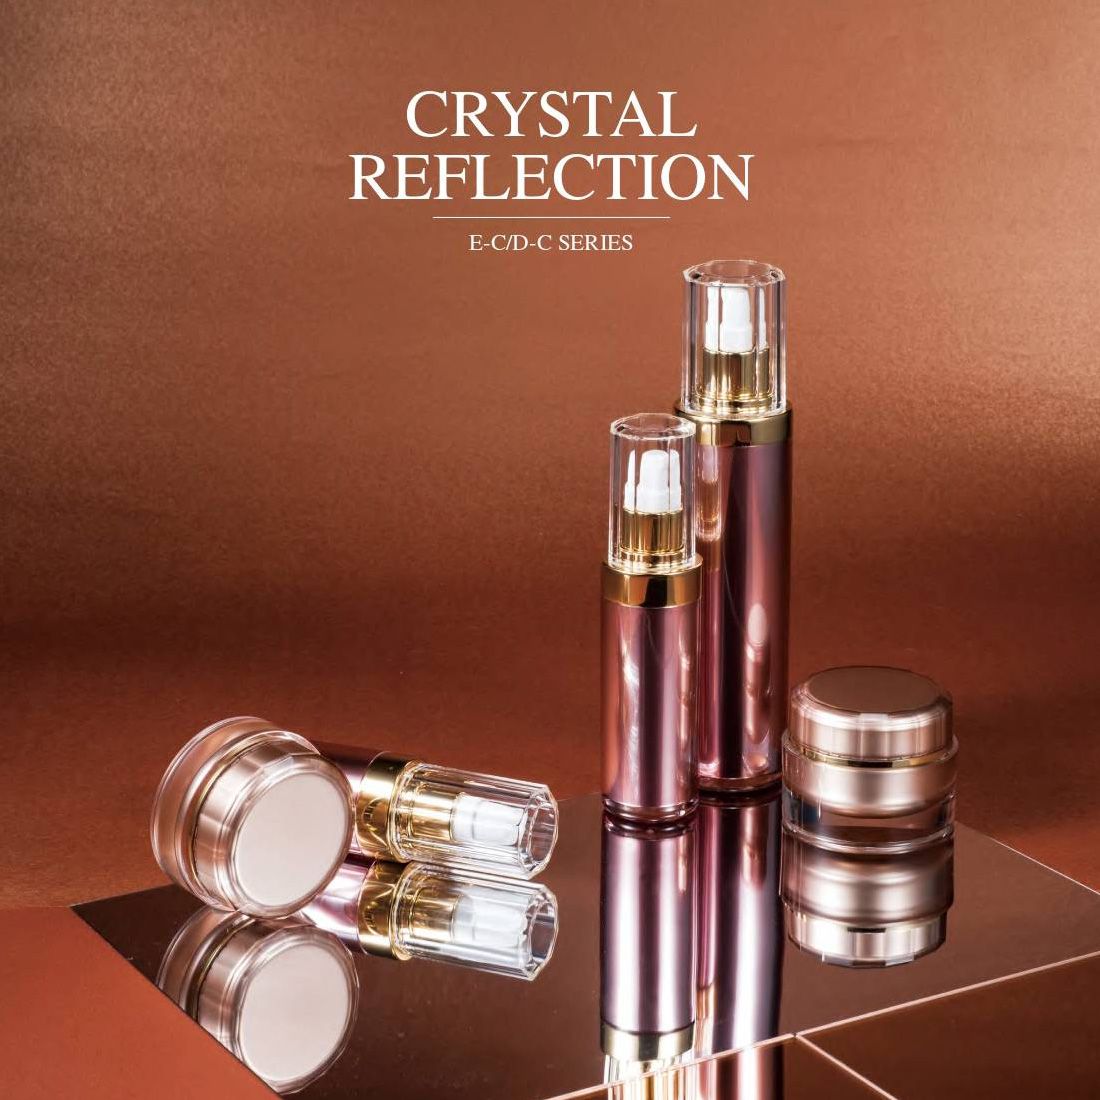 Crystal Reflection (บรรจุภัณฑ์เครื่องสำอางและผลิตภัณฑ์บำรุงผิวอะคริลิกหรูหรา) ซีรี่ส์ EC / DC